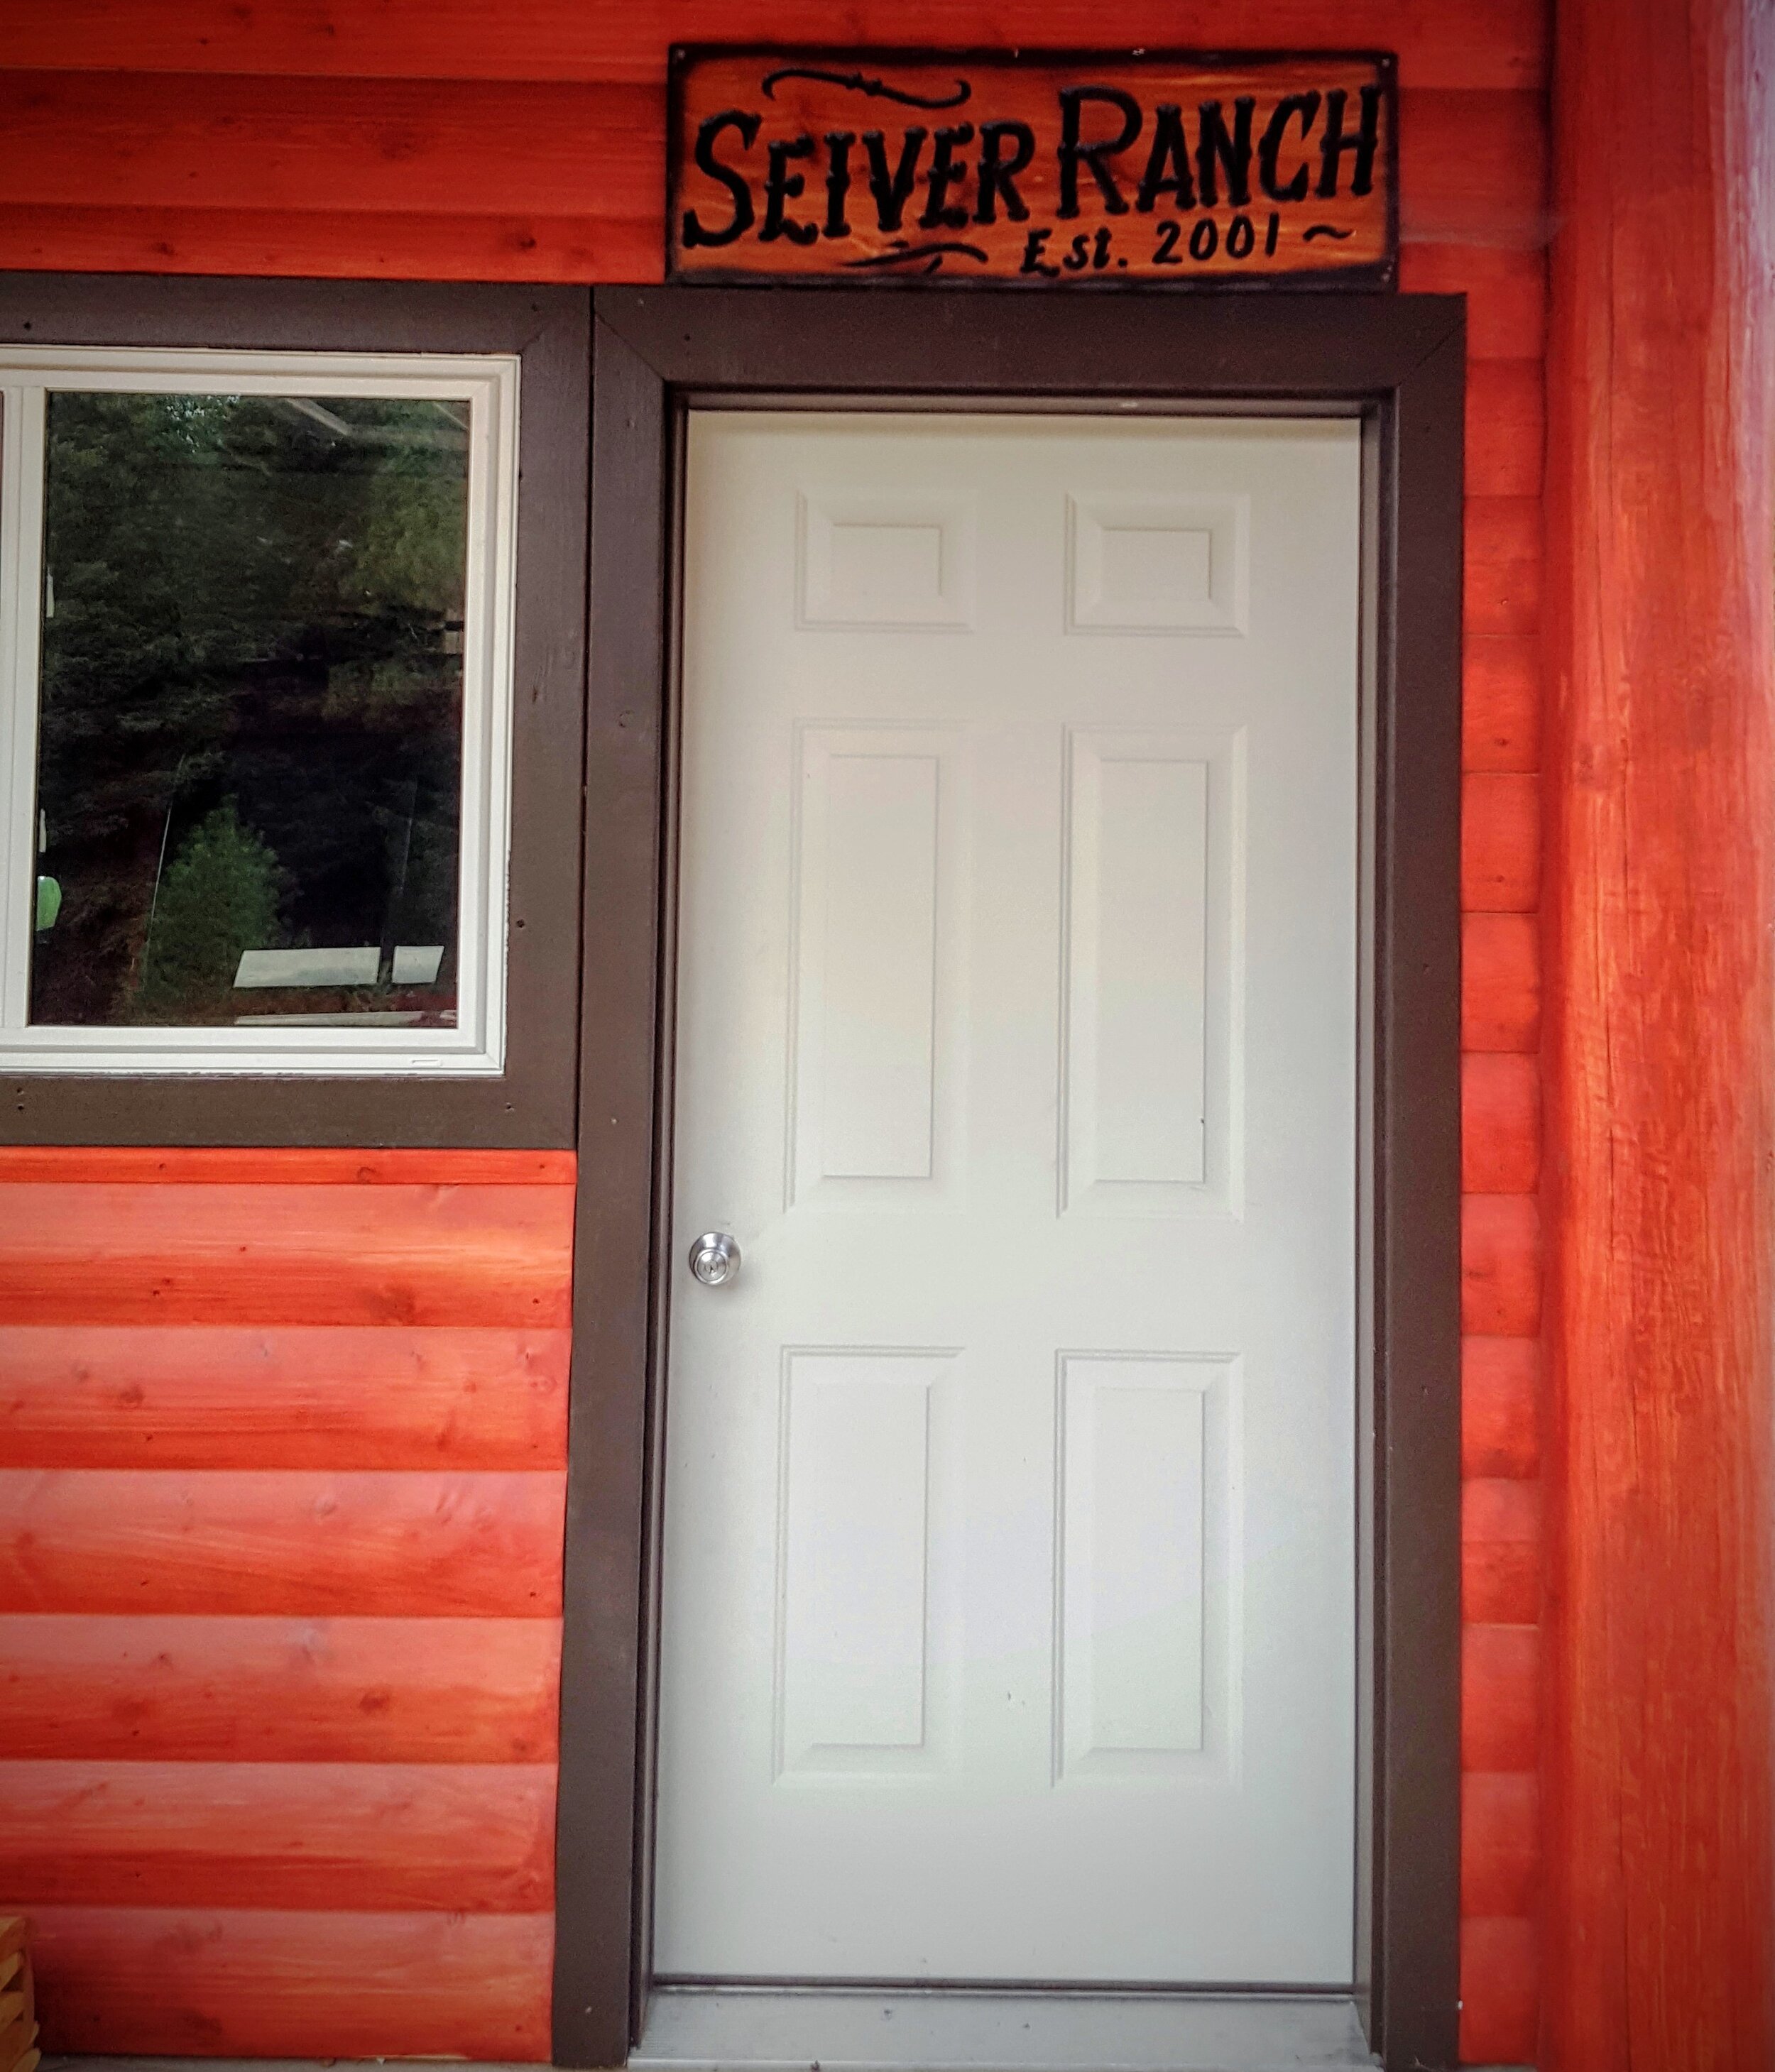 2016-08-18 - Seiver Ranch 2.0 Garden Shed Entrance Sign.JPG